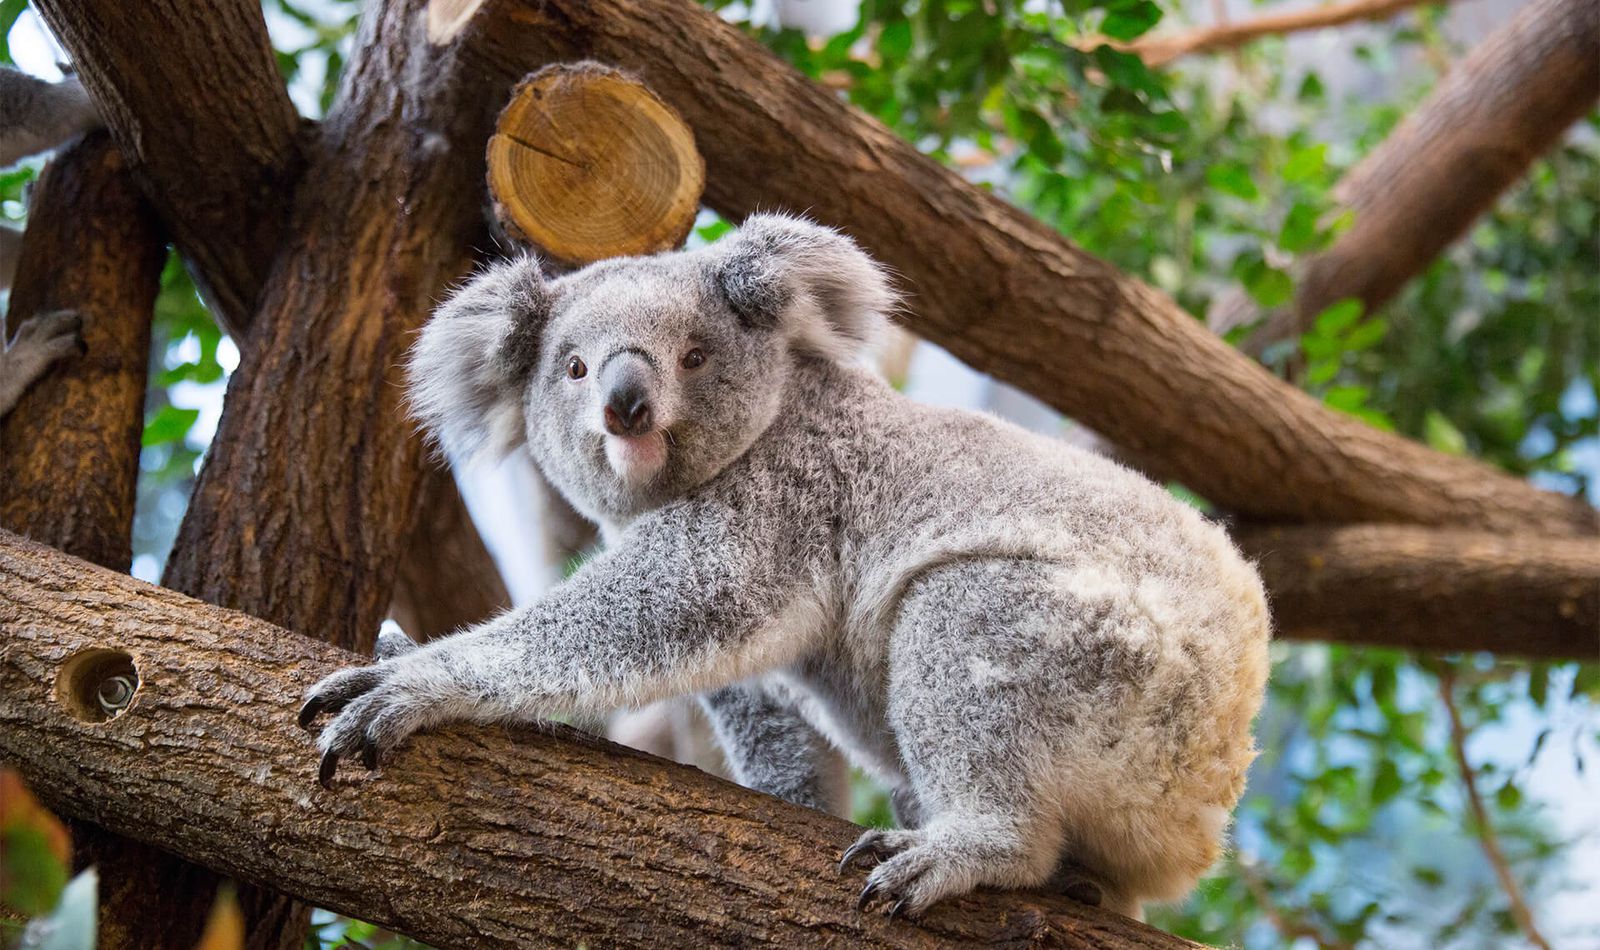 Comment S Appelle La Femelle Du Koala Koala du Queensland | ZooParc de Beauval